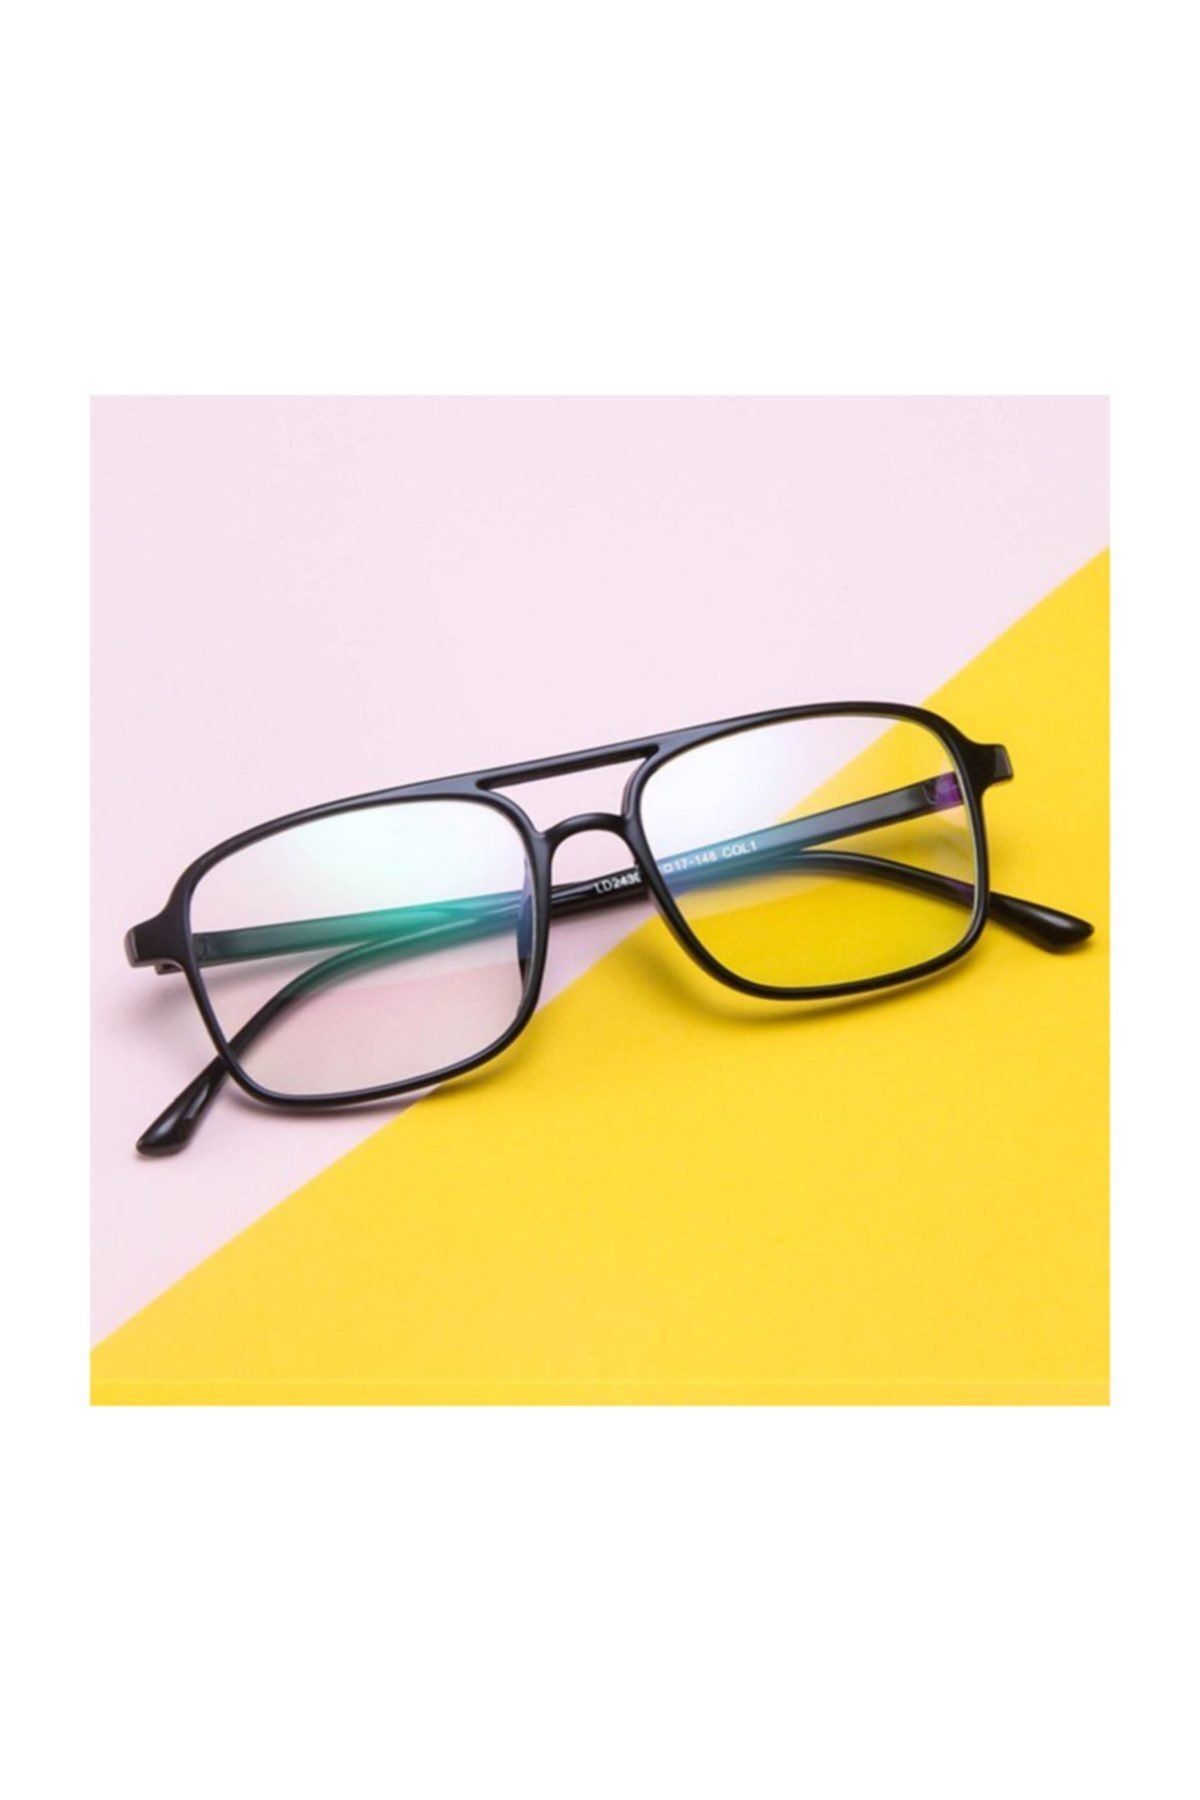 Jwl Unisex Pc Ekran Koruma Gözlük Modelleri Yeni Moda Çerçeve Tarz Gözlüğü Anti Reflekte Imaj